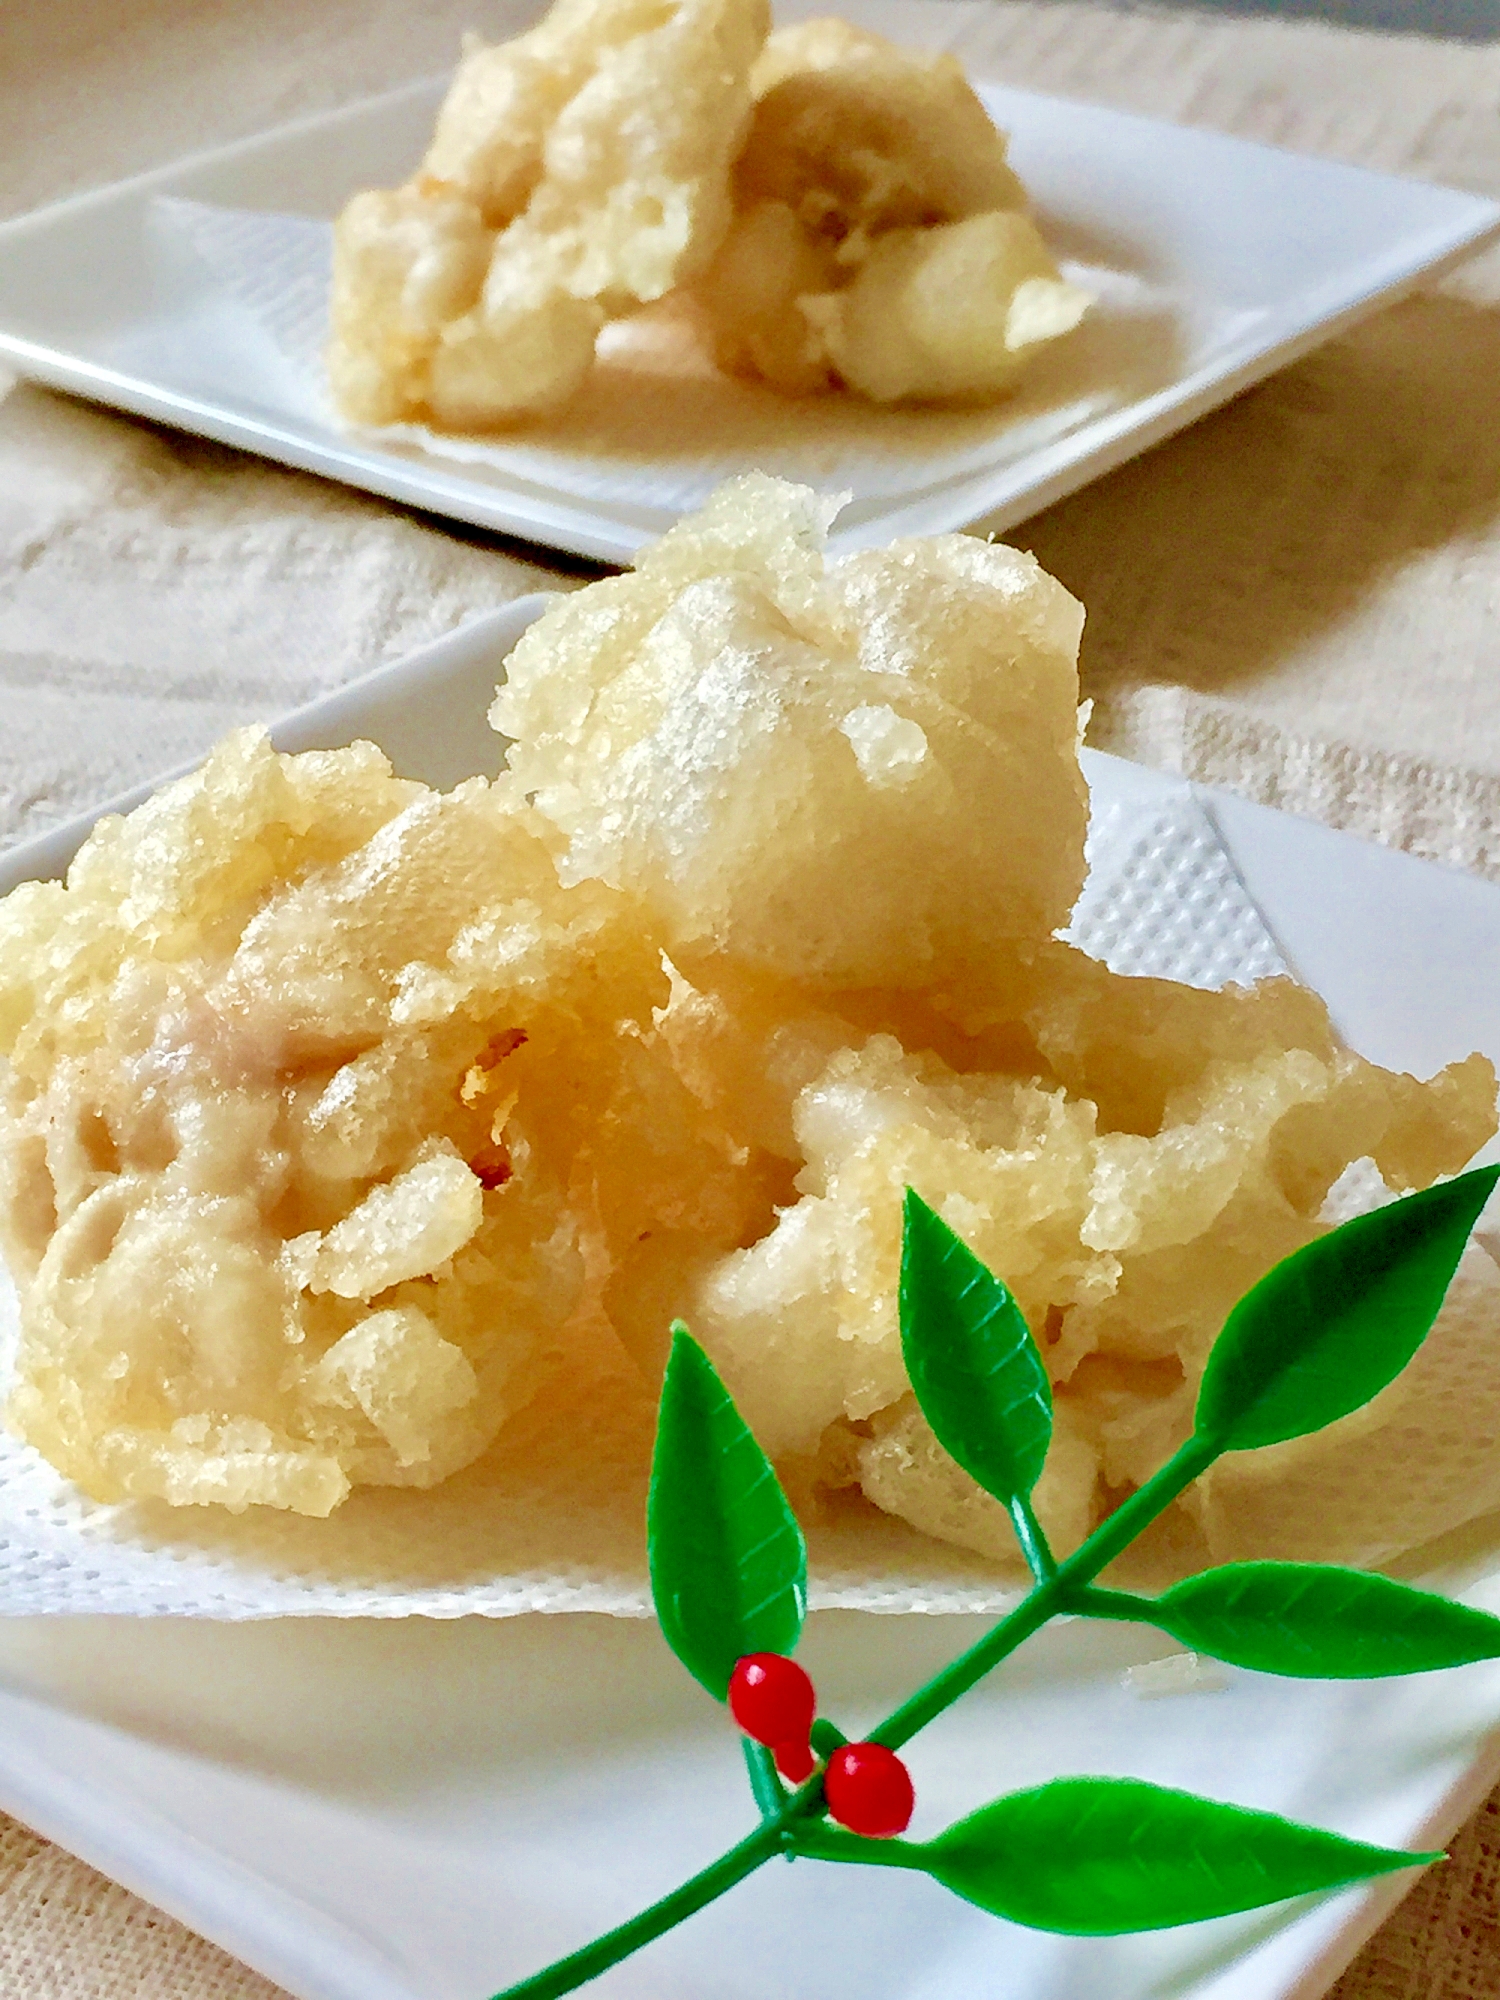 とろ り蕩けて濃厚 鱈の白子の天ぷら レシピ 作り方 By みさきらりんず 楽天レシピ